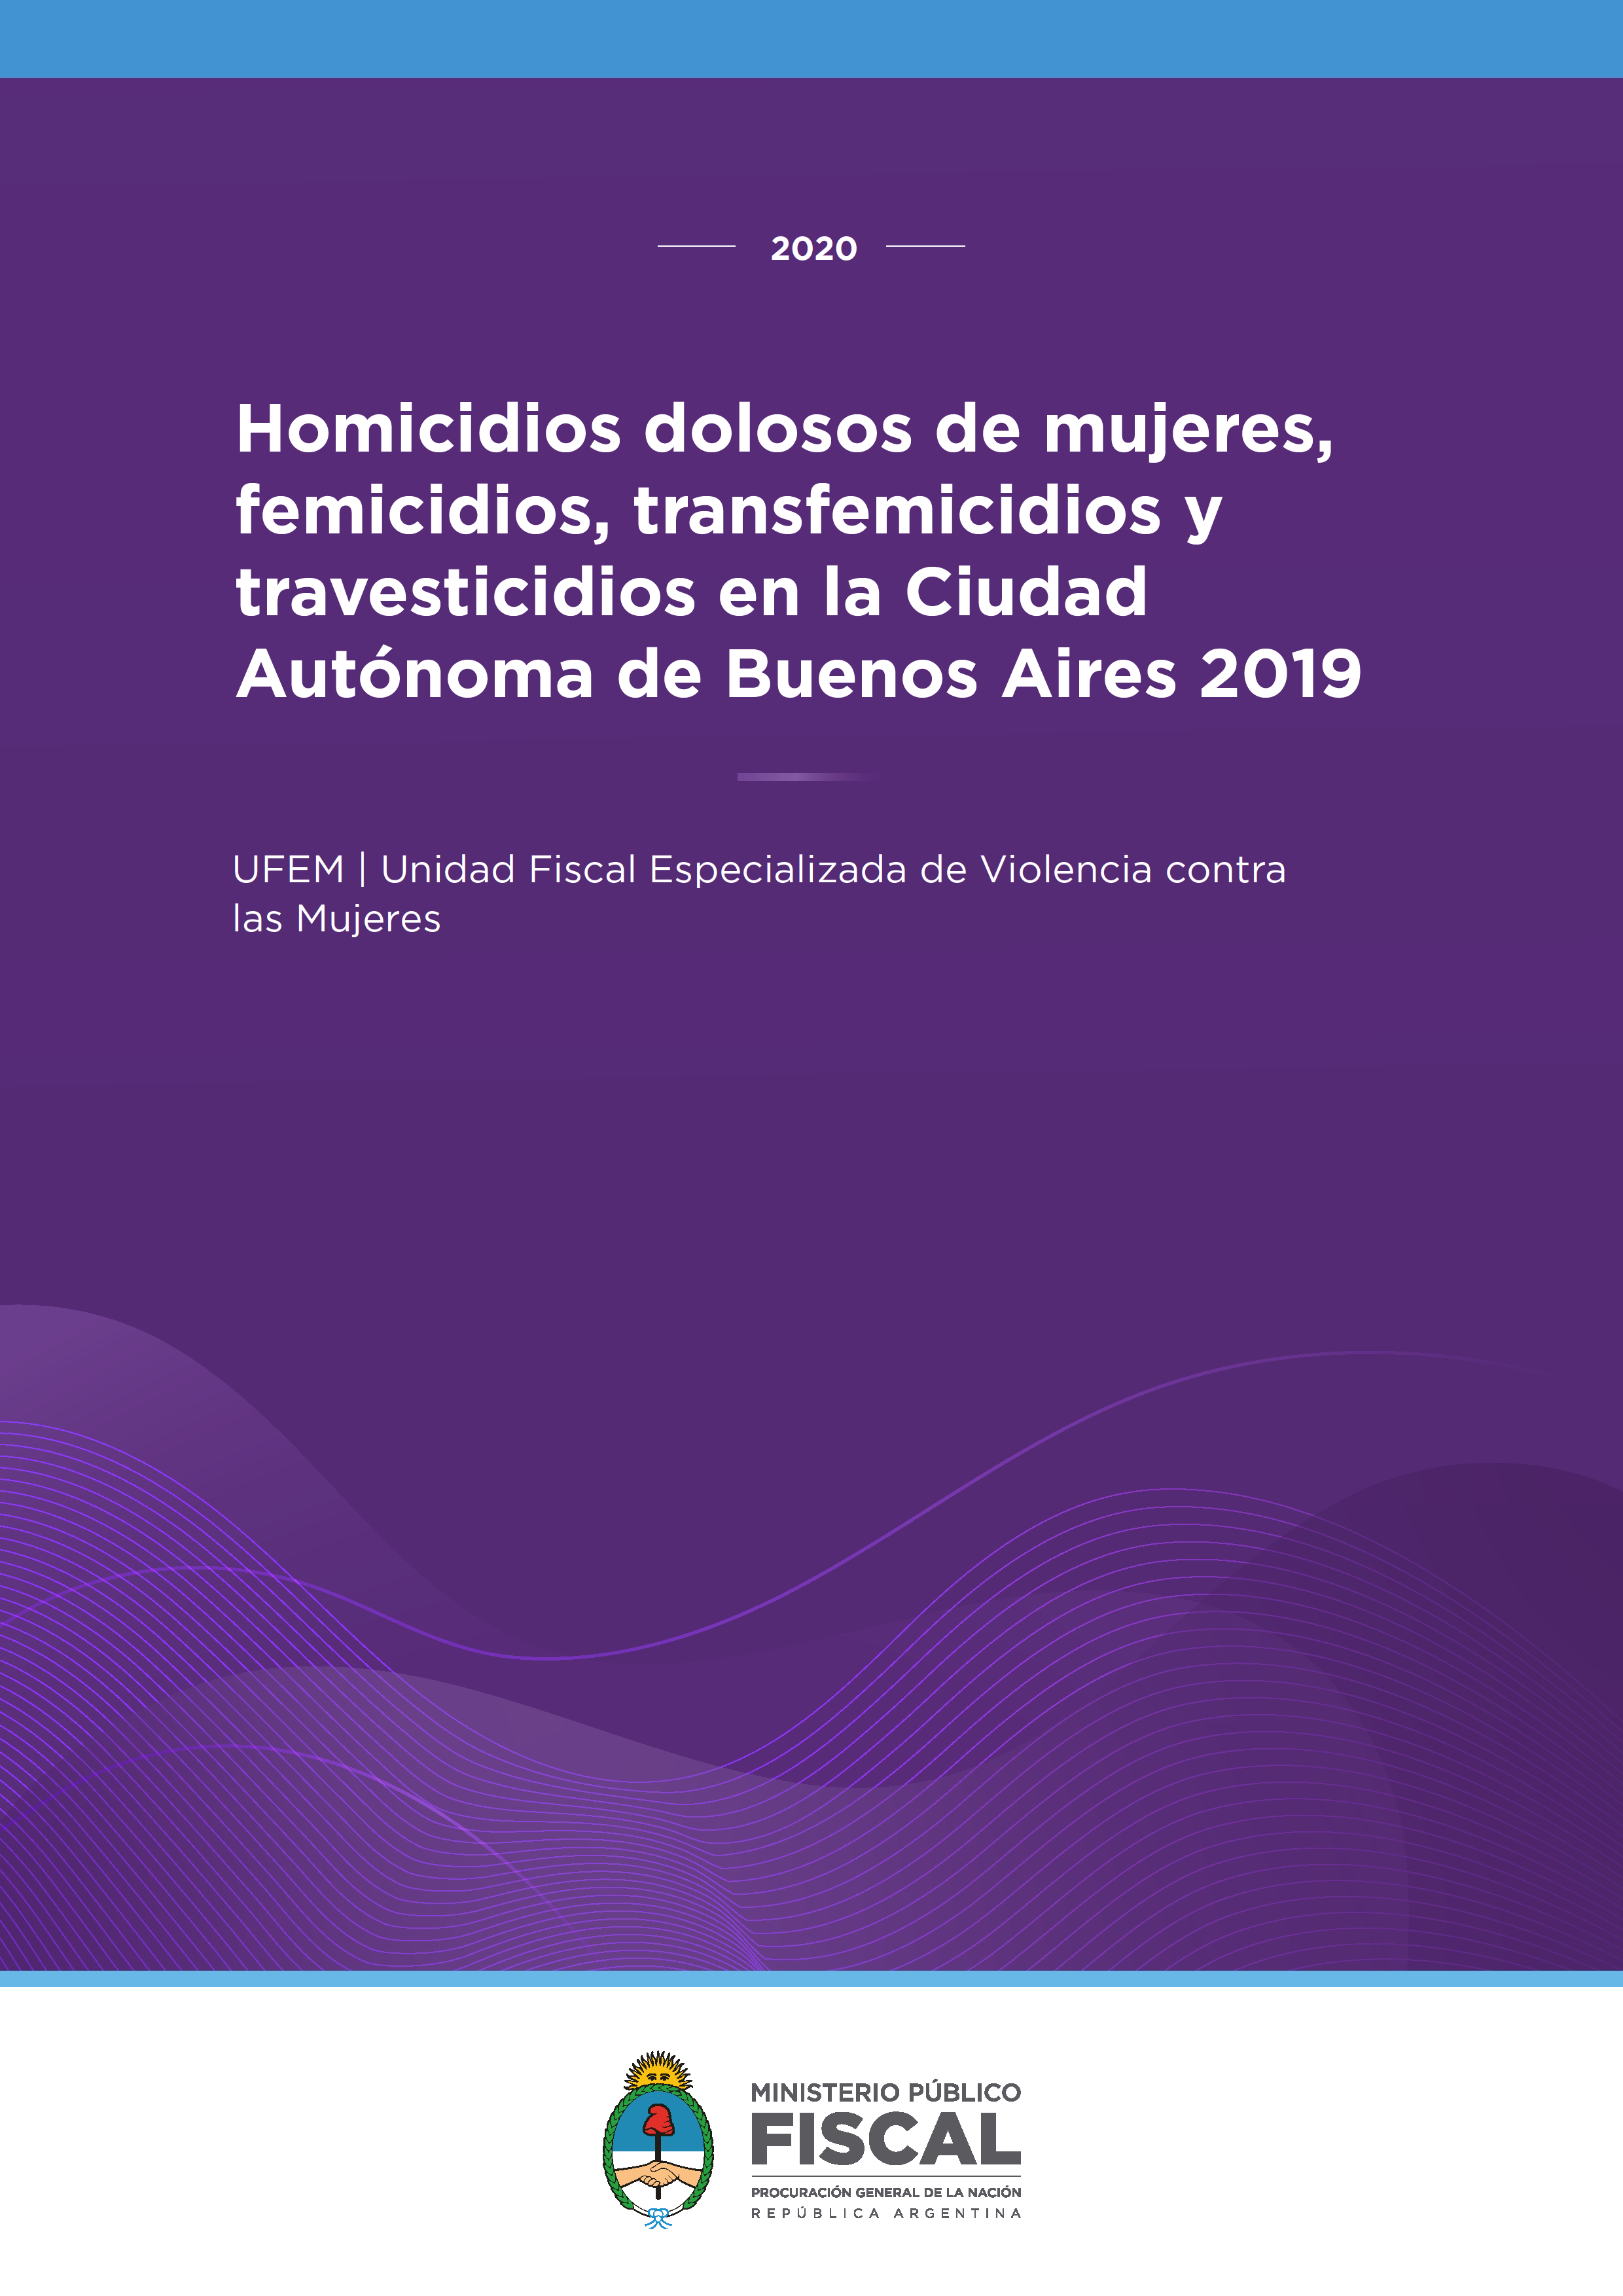 Homicidios dolosos de mujeres, femicidios, transfemicidios y travesticidios en la Ciudad Autónoma de Buenos Aires 20198